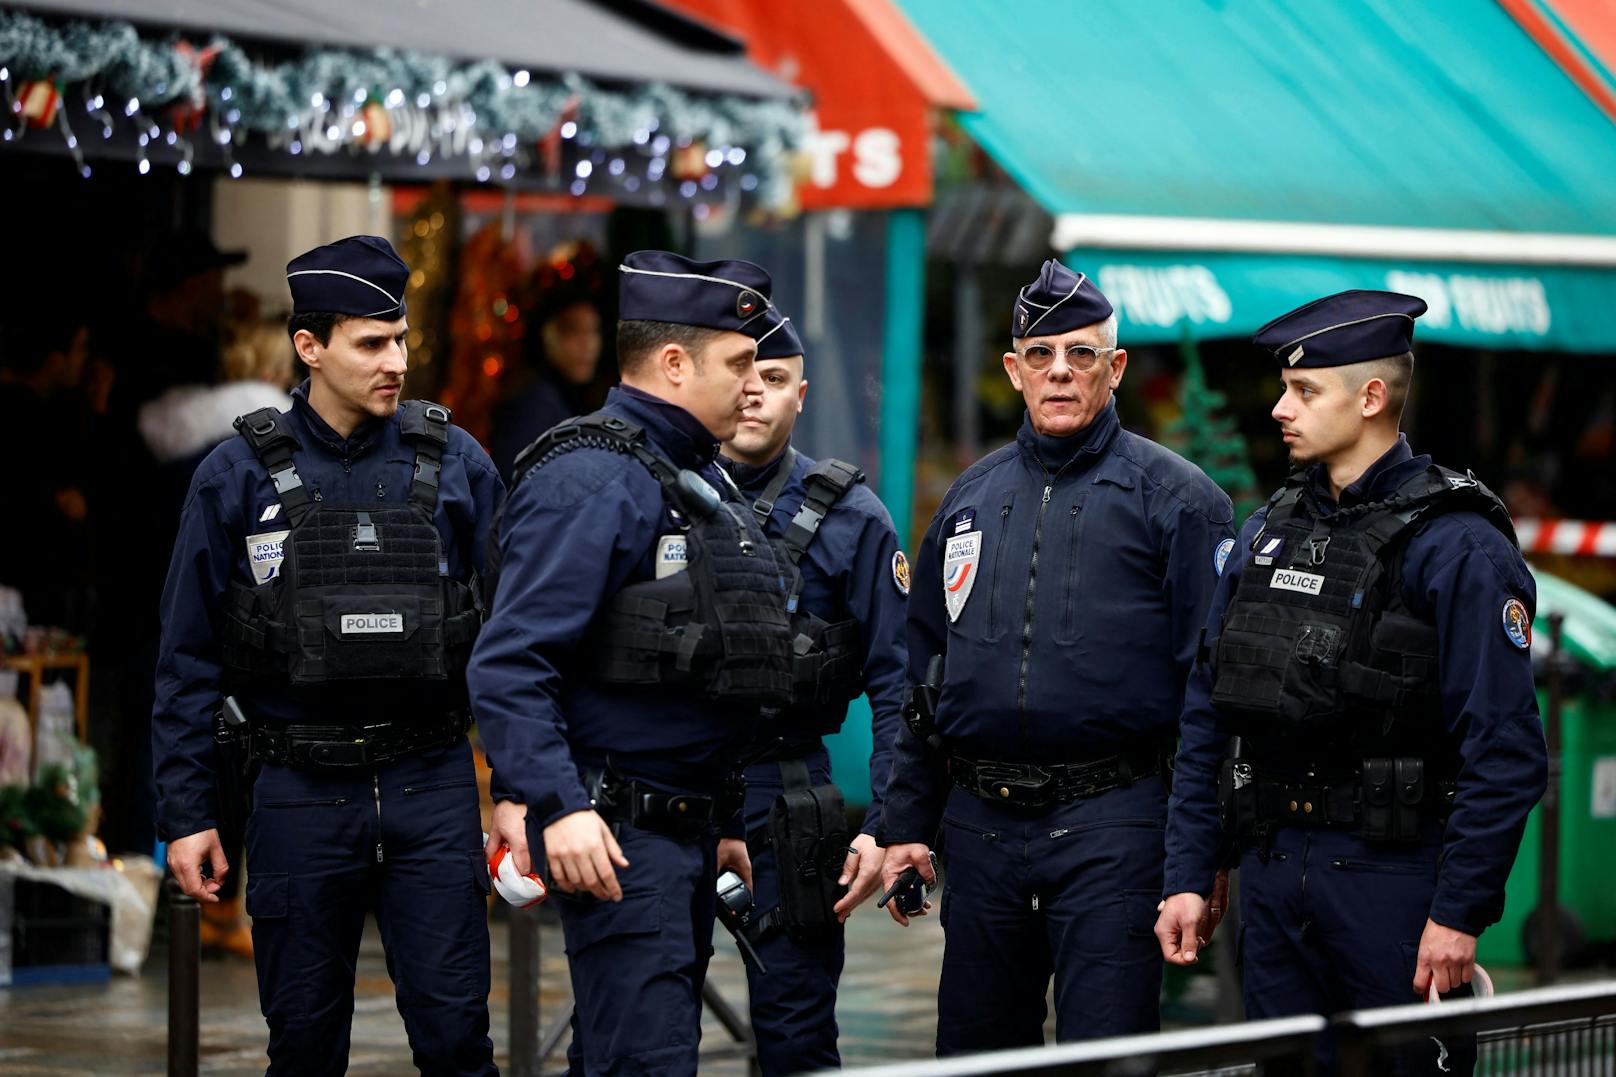 Die Schießerei soll sich Pariser Medienberichten zufolge in einem kurdischen Kulturzentrum ereignet haben.